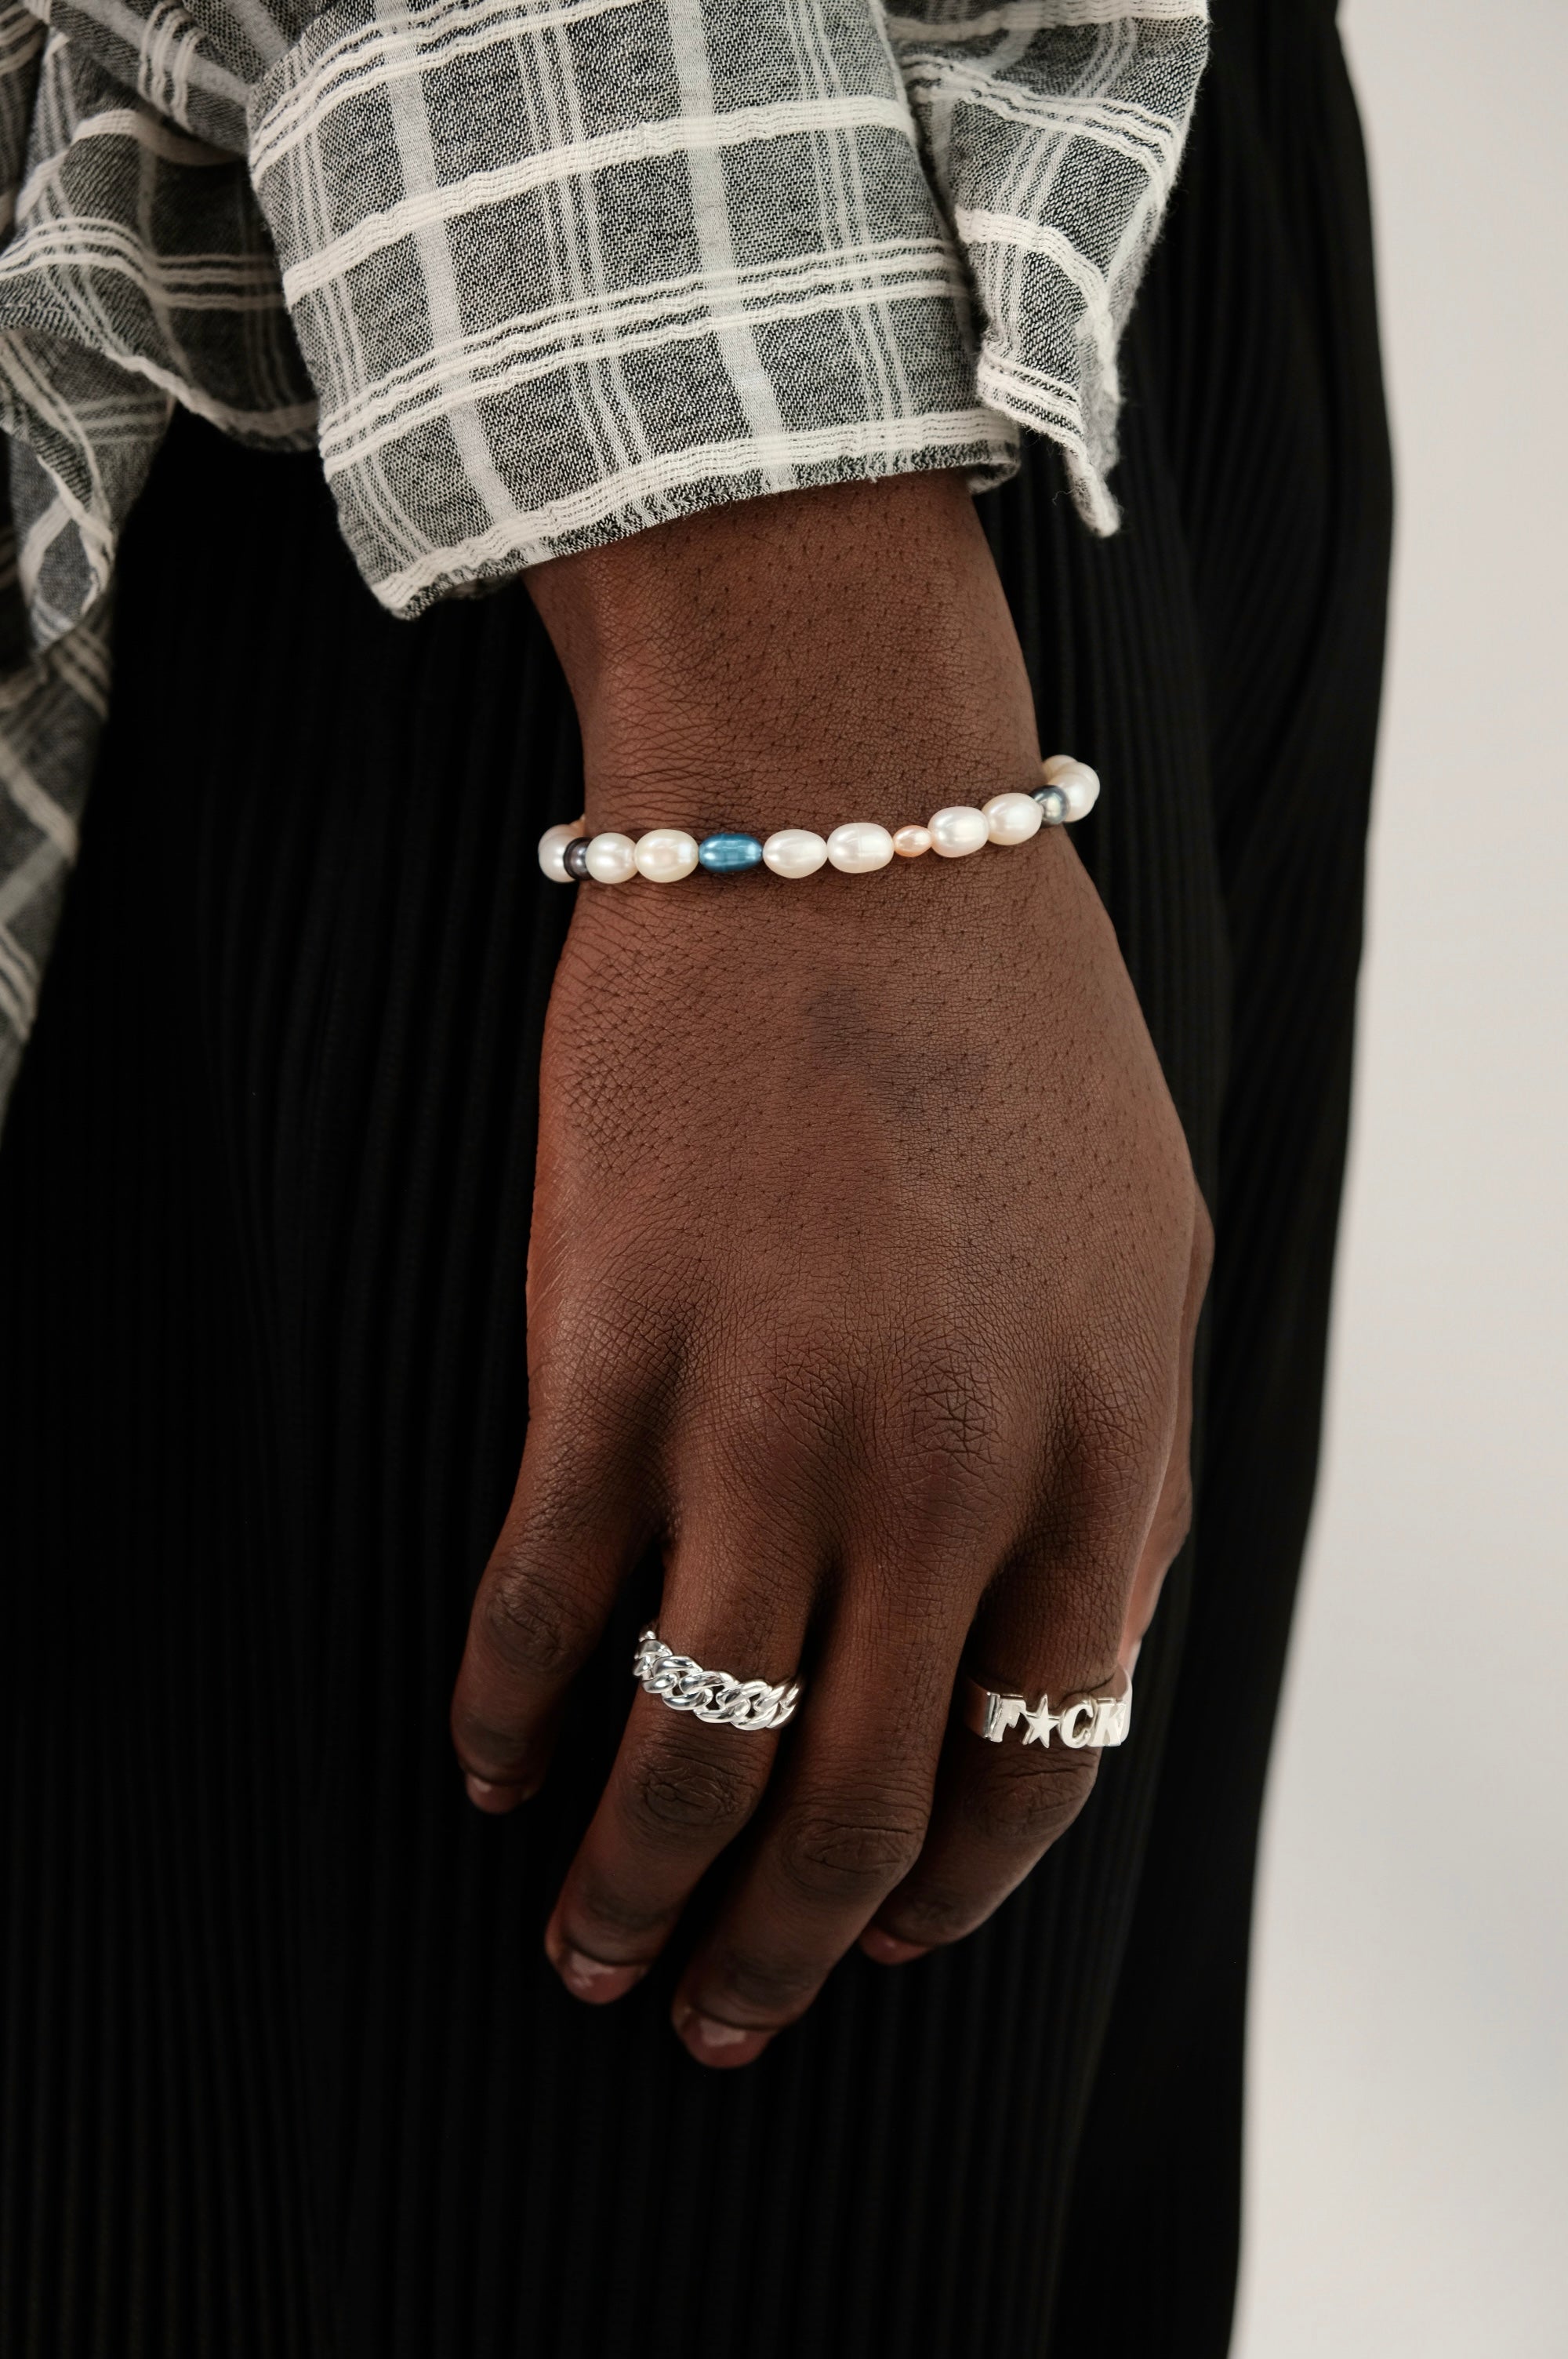 Azure Pearl Bracelet